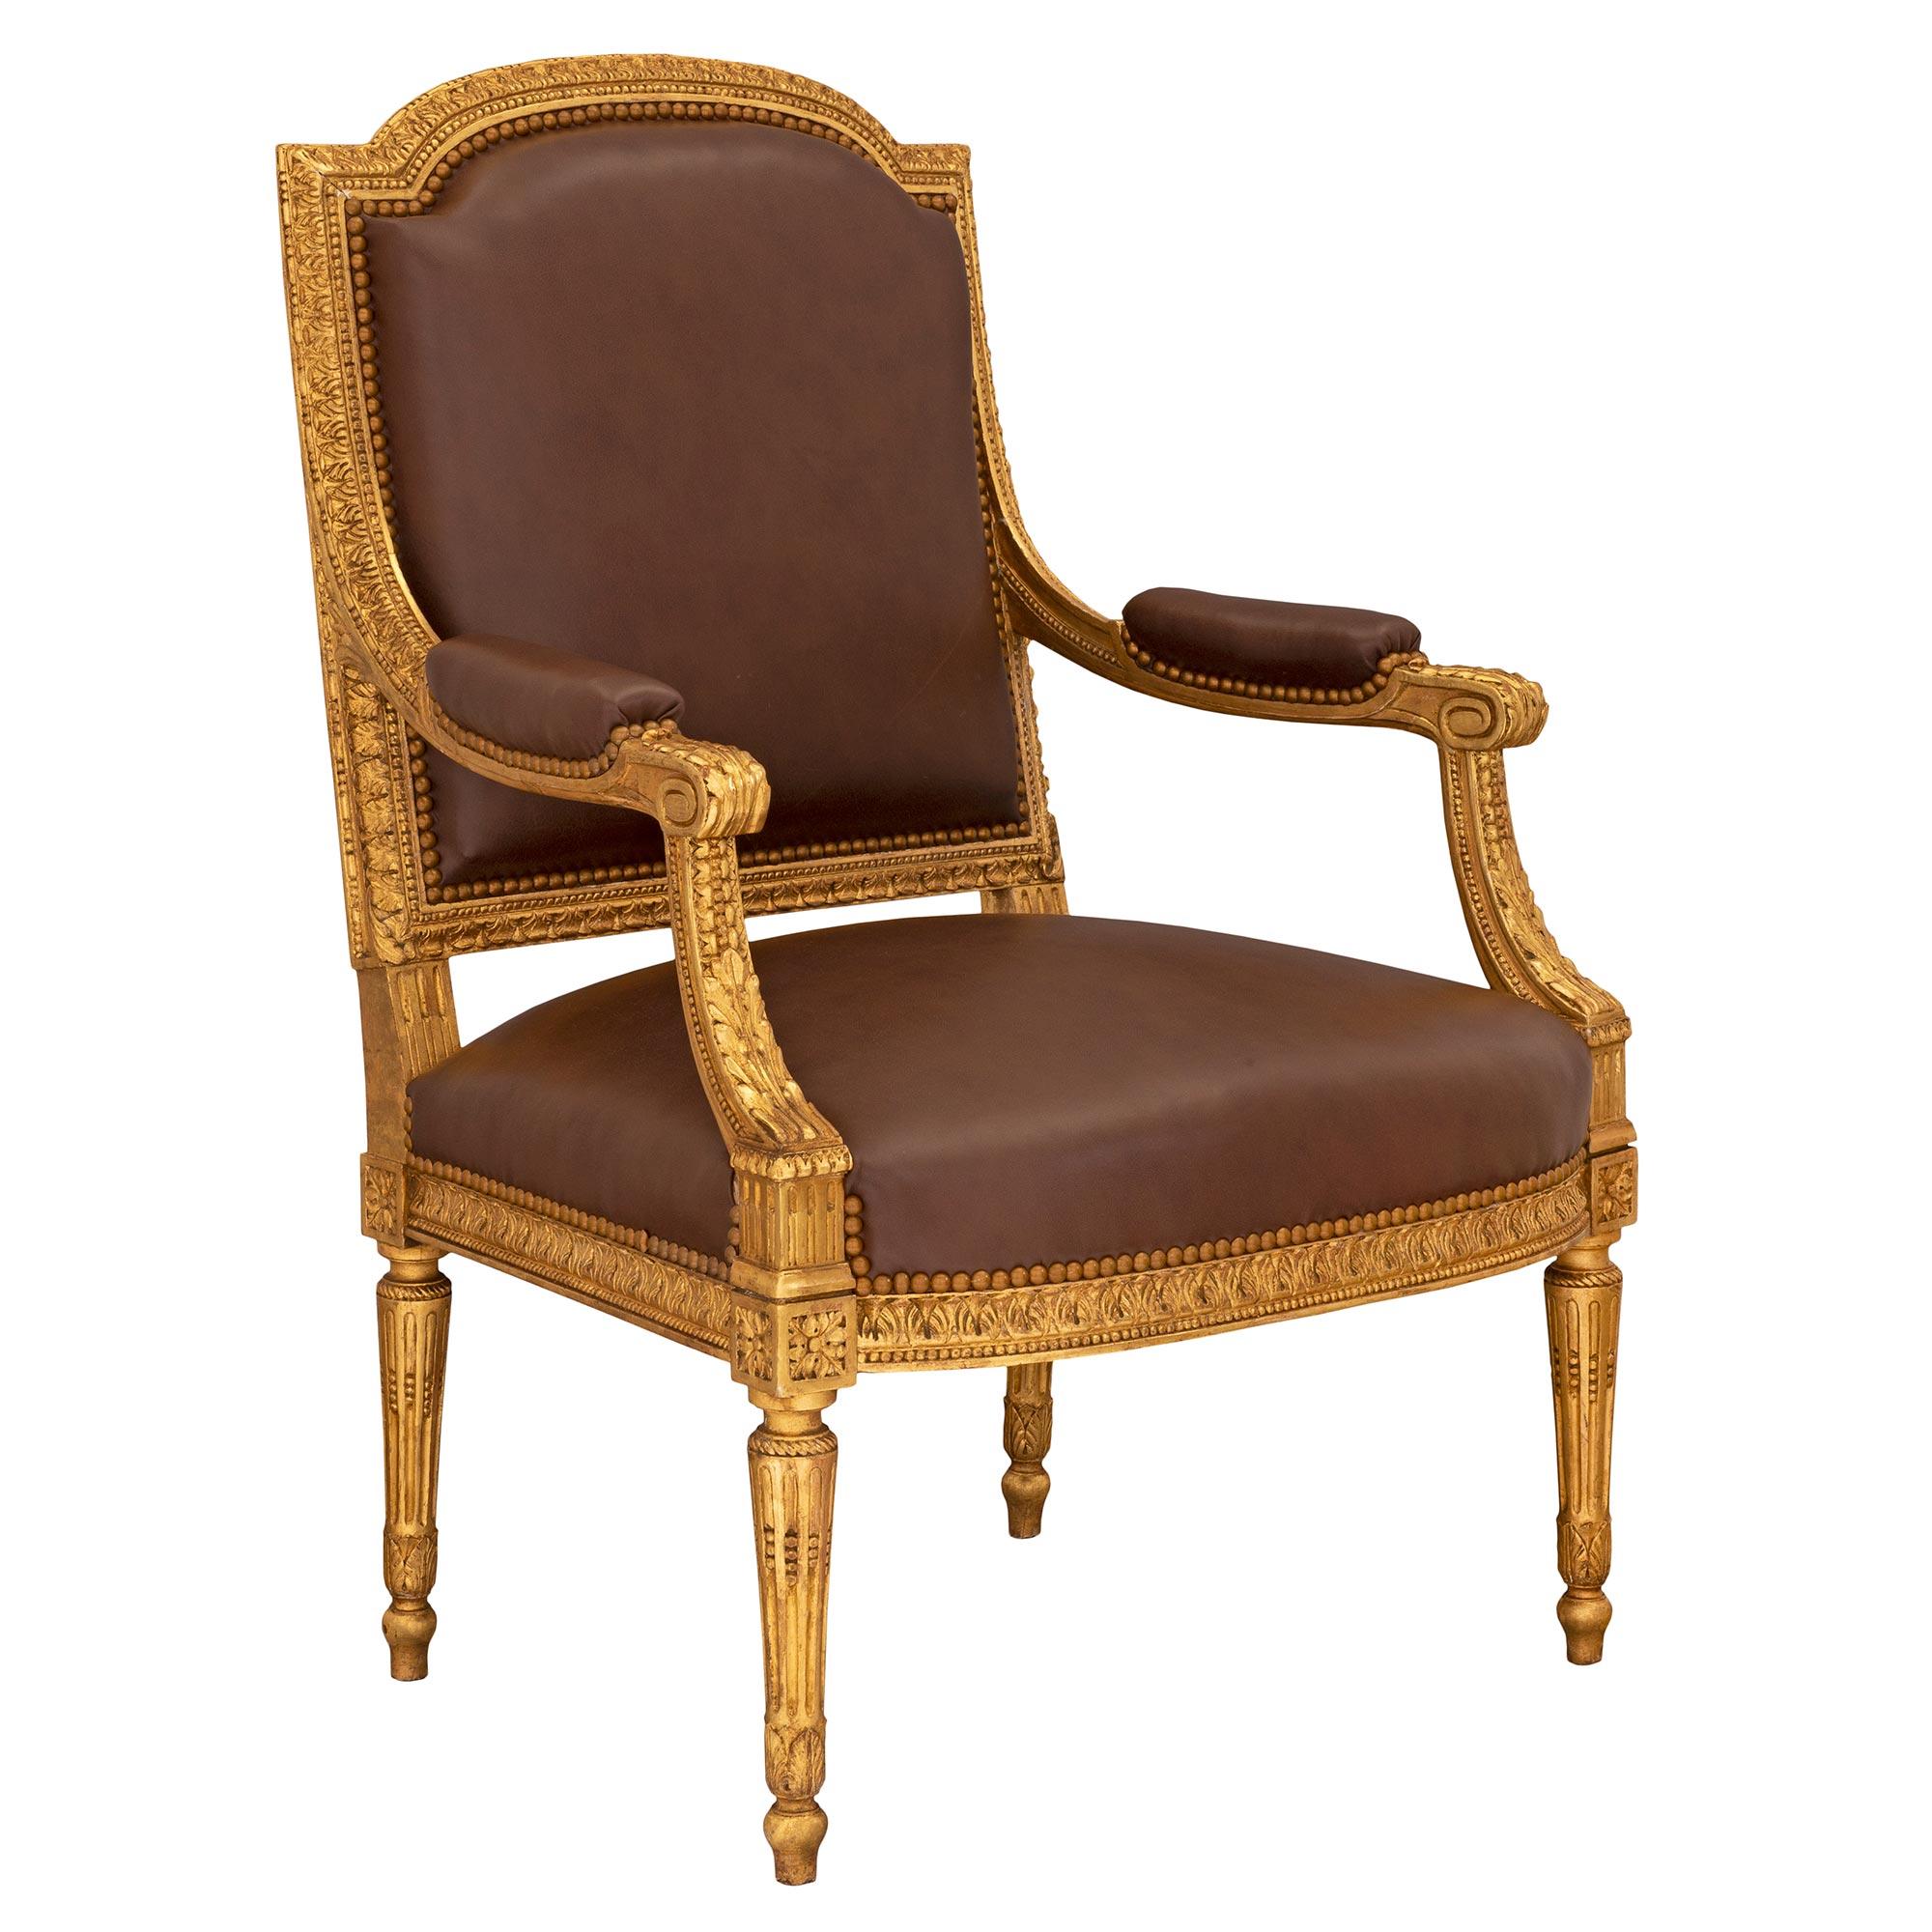 Un remarquable et très élégant ensemble complet de quatre fauteuils en bois doré de style Louis XVI du XIXe siècle. Chaque chaise repose sur des pieds circulaires fuselés et cannelés, des pieds en forme de topie, des feuilles finement sculptées et